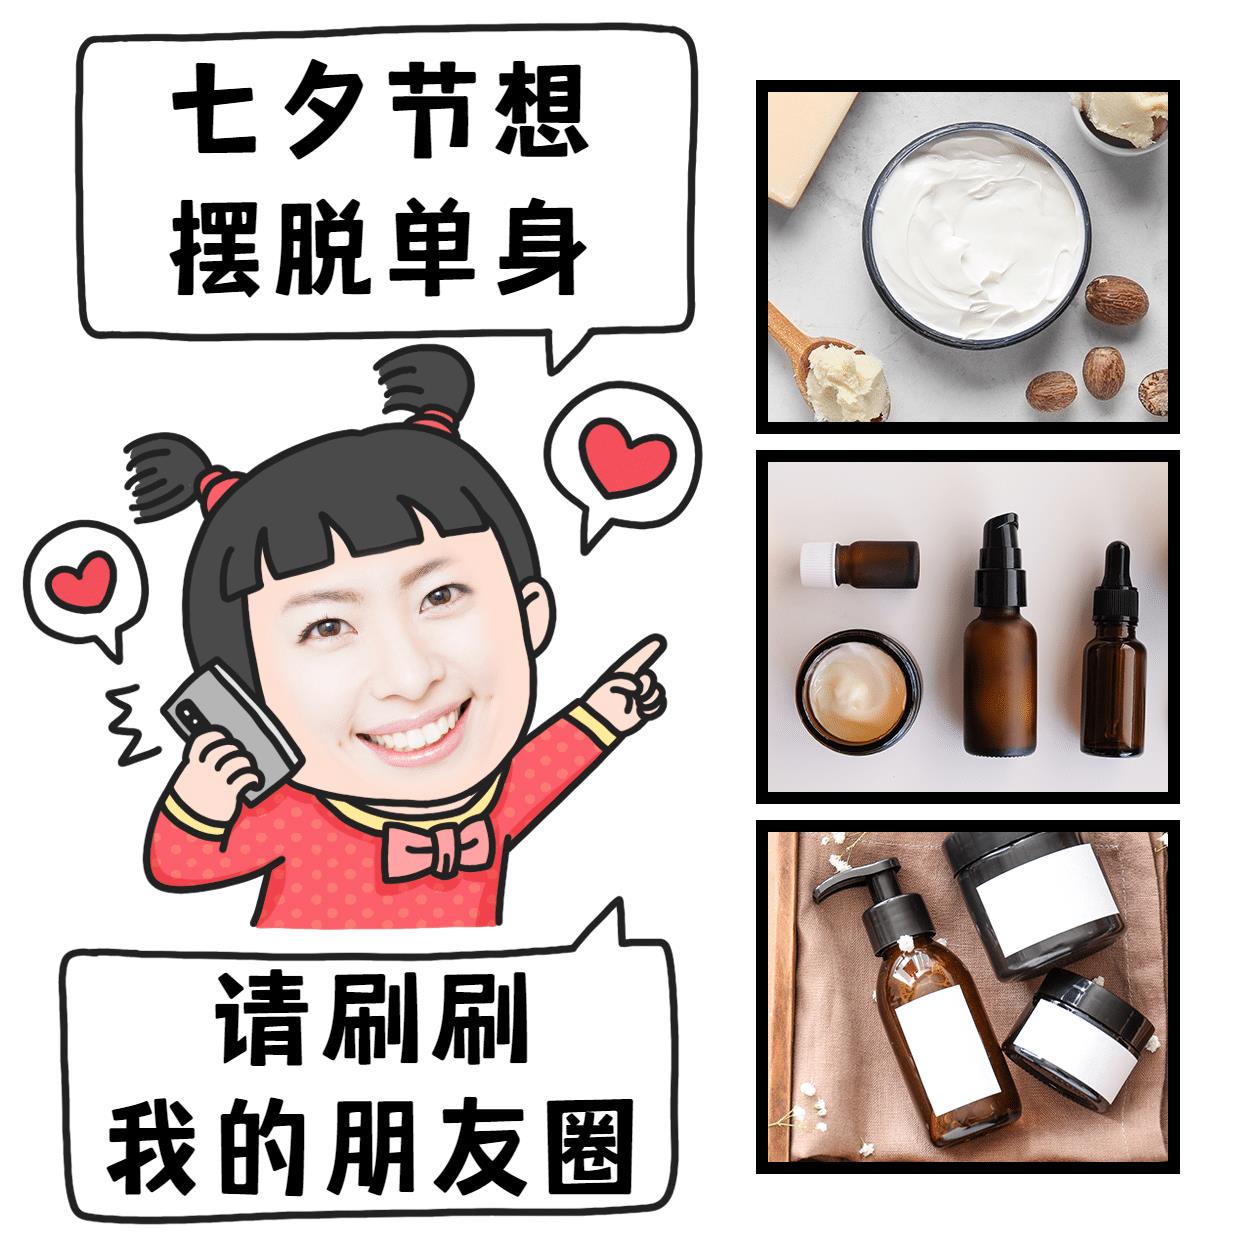 七夕营销表情包趣味晒产品手绘爱心图片